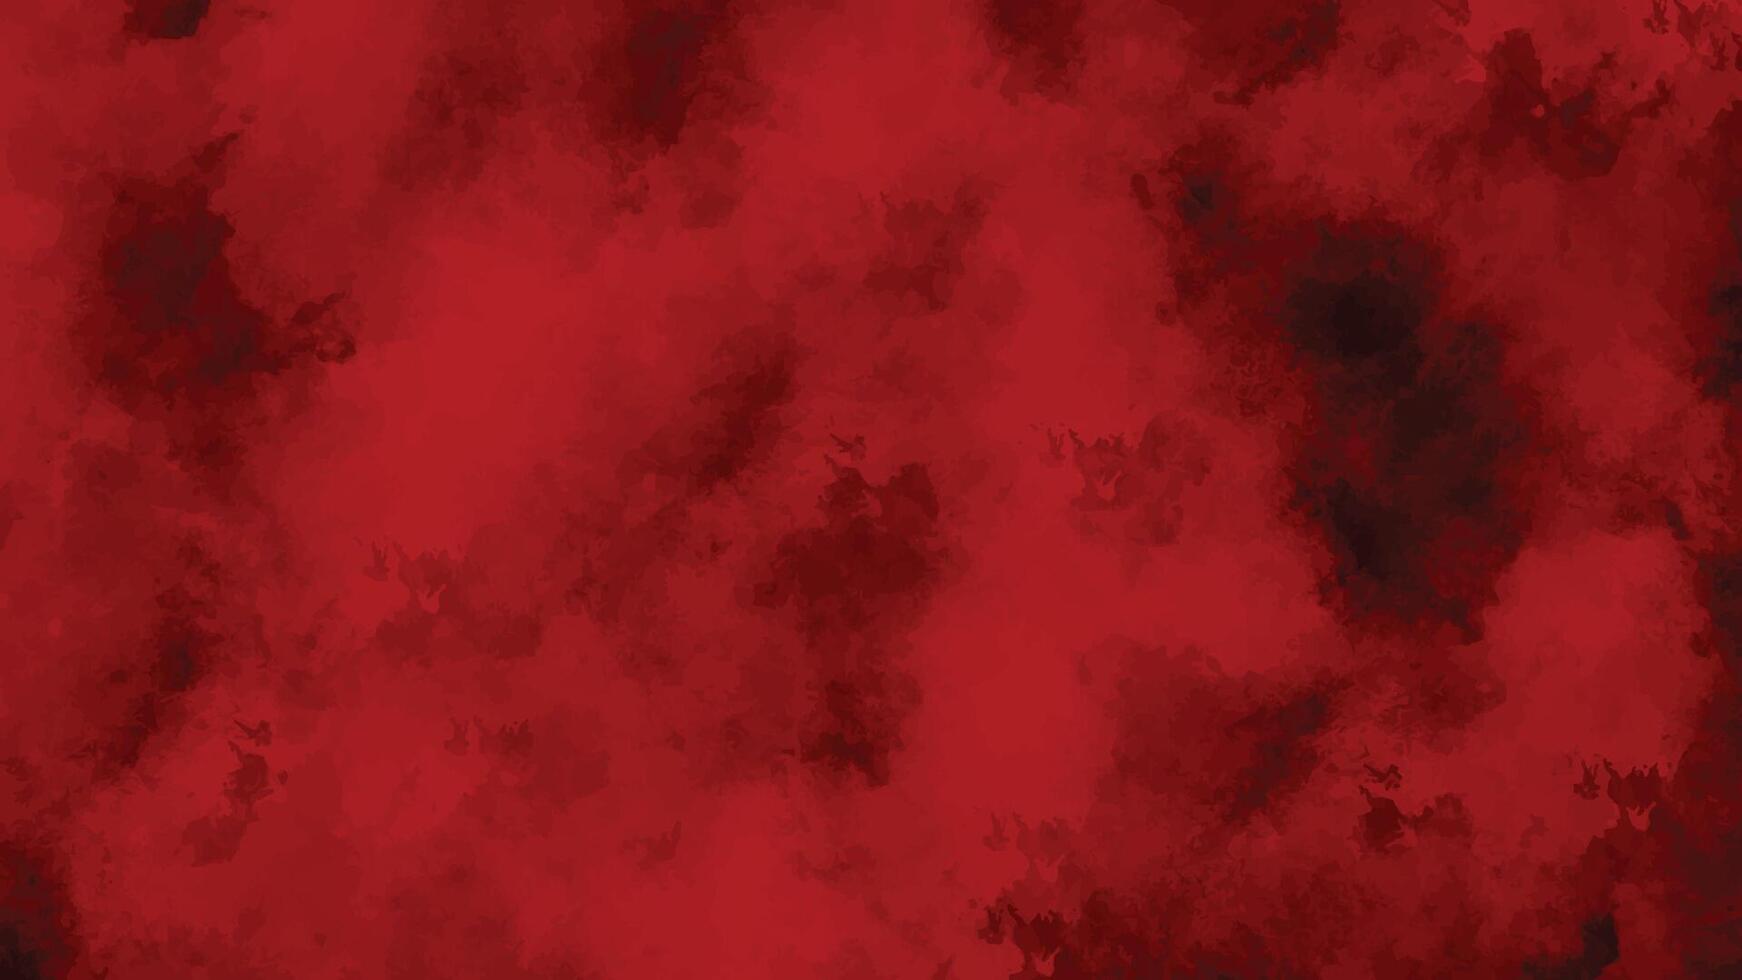 Scratch grunge urban background, distressed red grunge texture background, vector